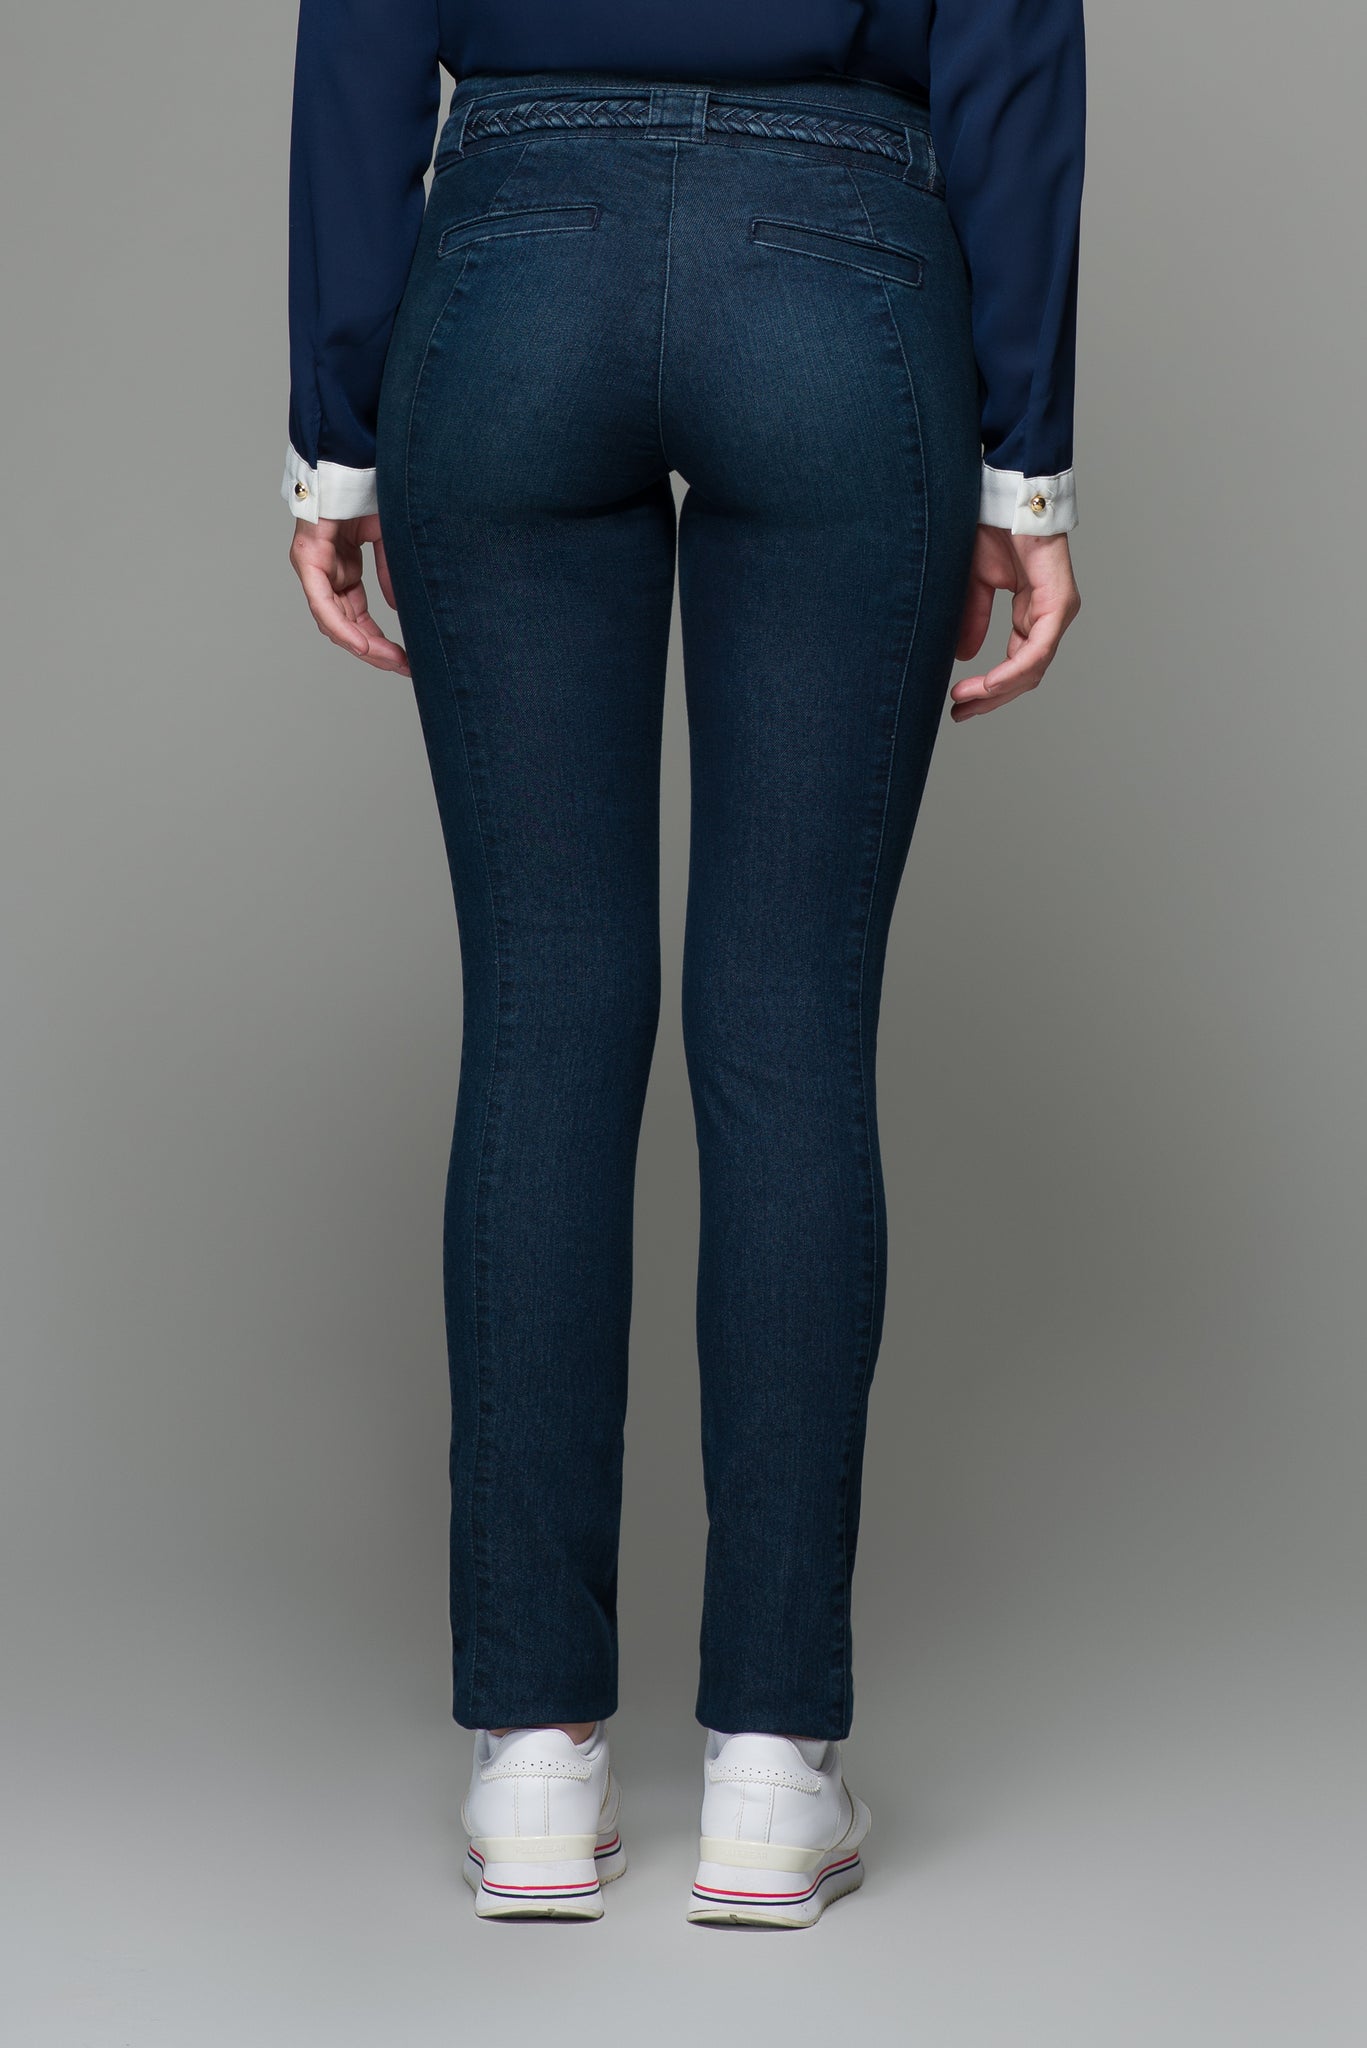 OHPOMP!® Cintura Media Super Skinny Jeans con Cinturón T021